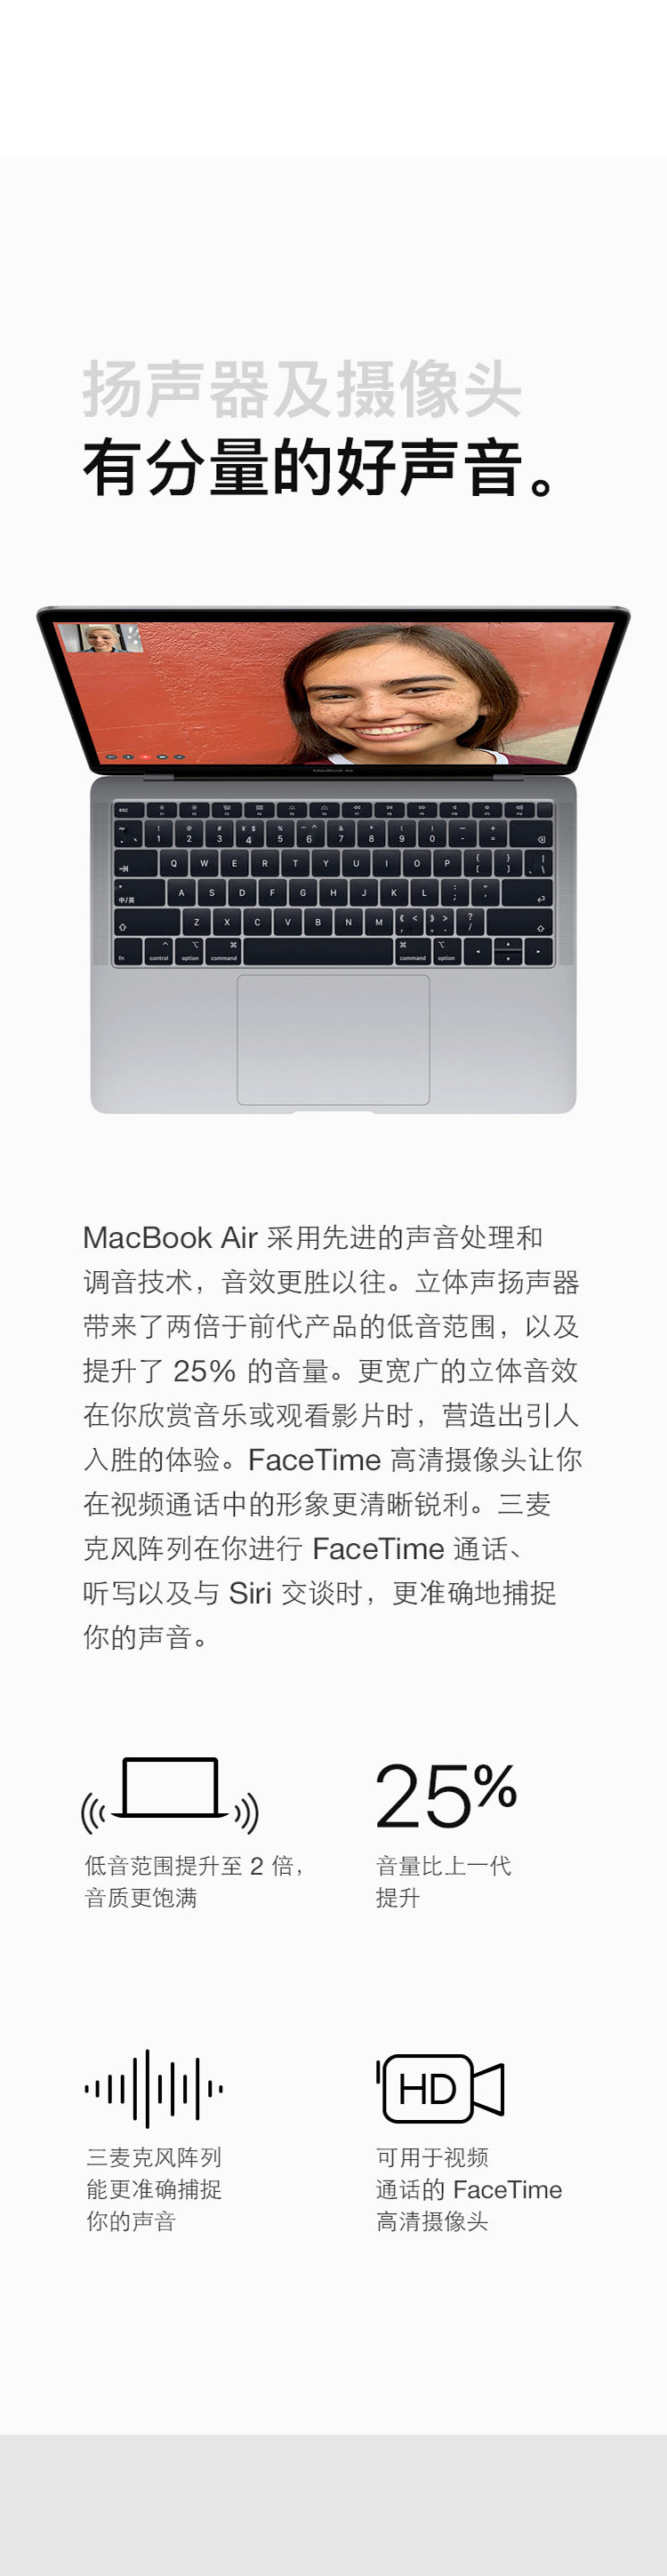 苹果/APPLE Macbook Air 13.3寸 笔记本电脑 MVFJ2 MVFL2 MVFN2